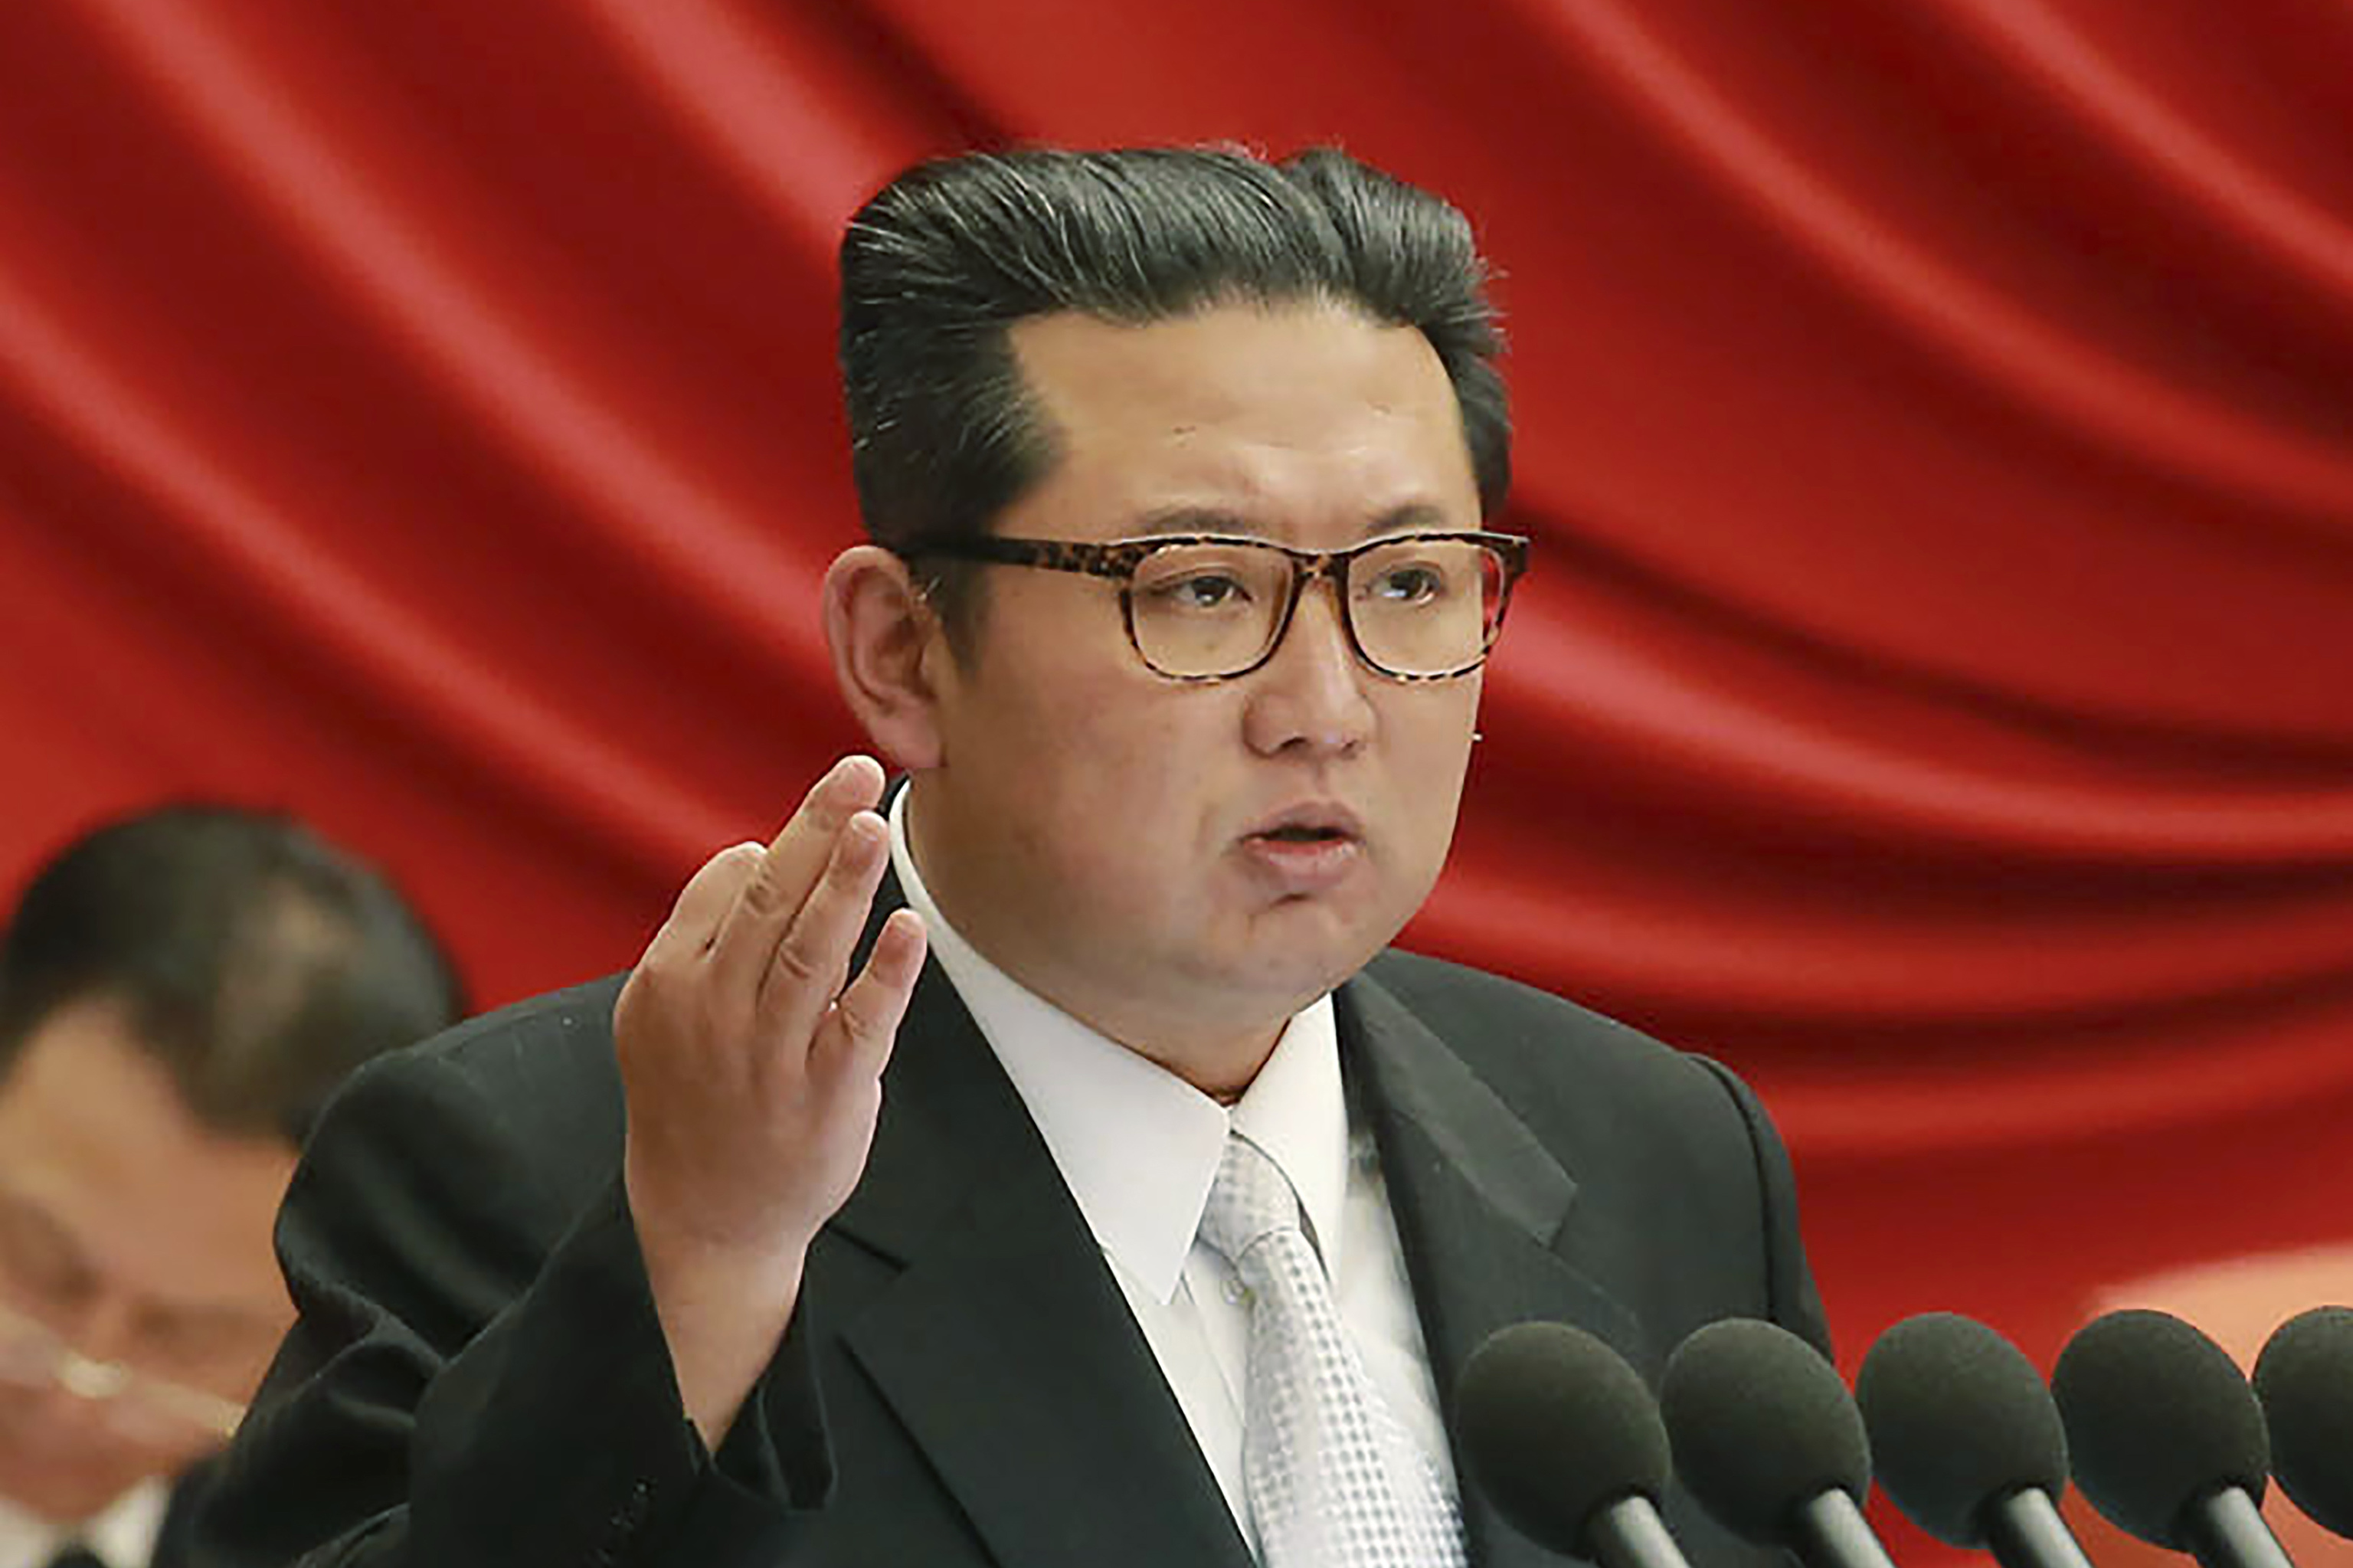 El lder de Corea del Norte, Kim Jong-Un, en una imagen reciente.